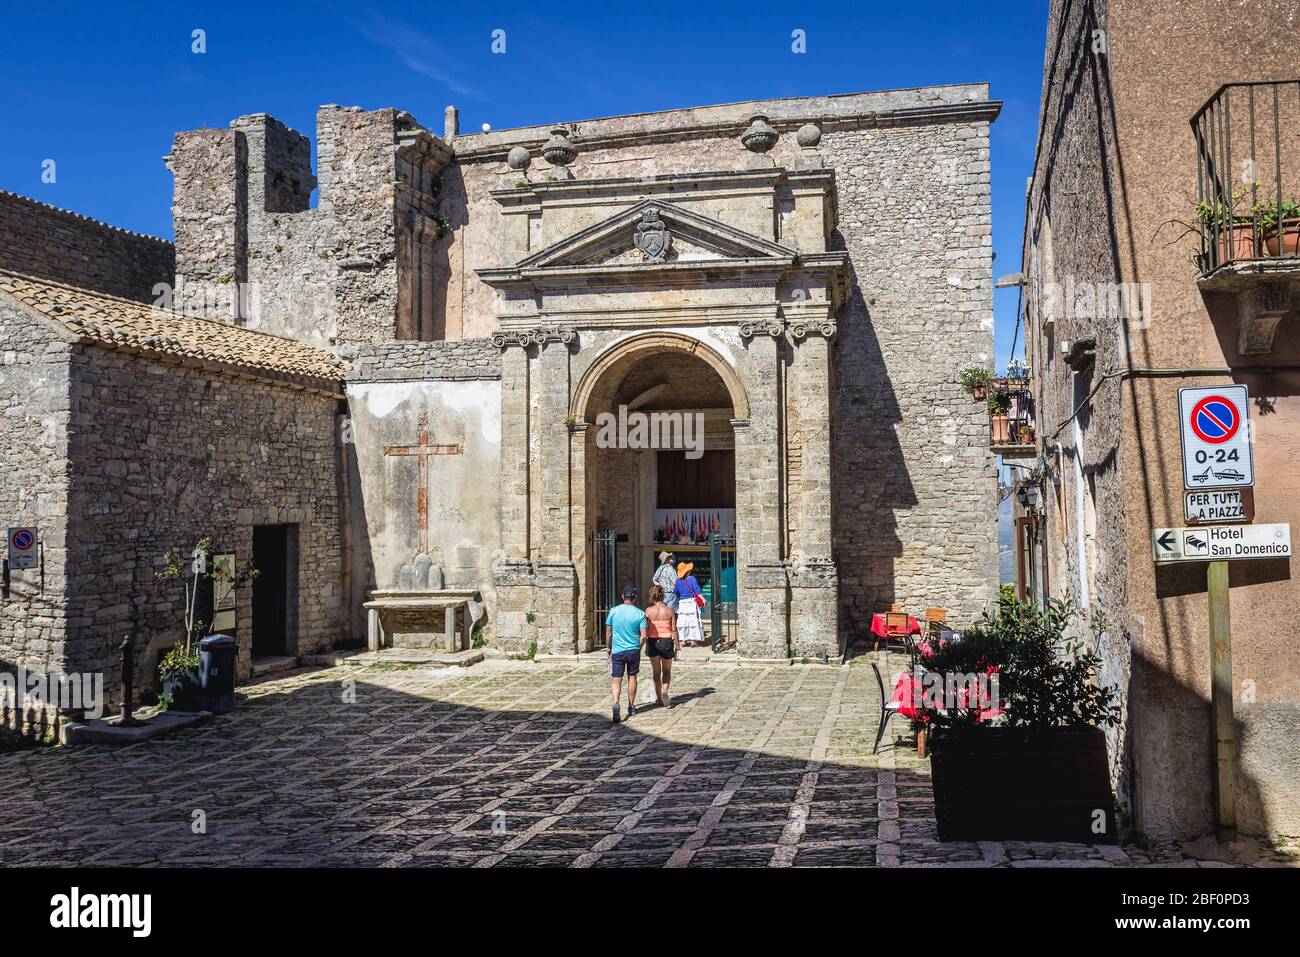 Antica chiesa di San Domenico a Erice storica città sul Monte Erice in provincia di Trapani in Sicilia, Italia meridionale Foto Stock